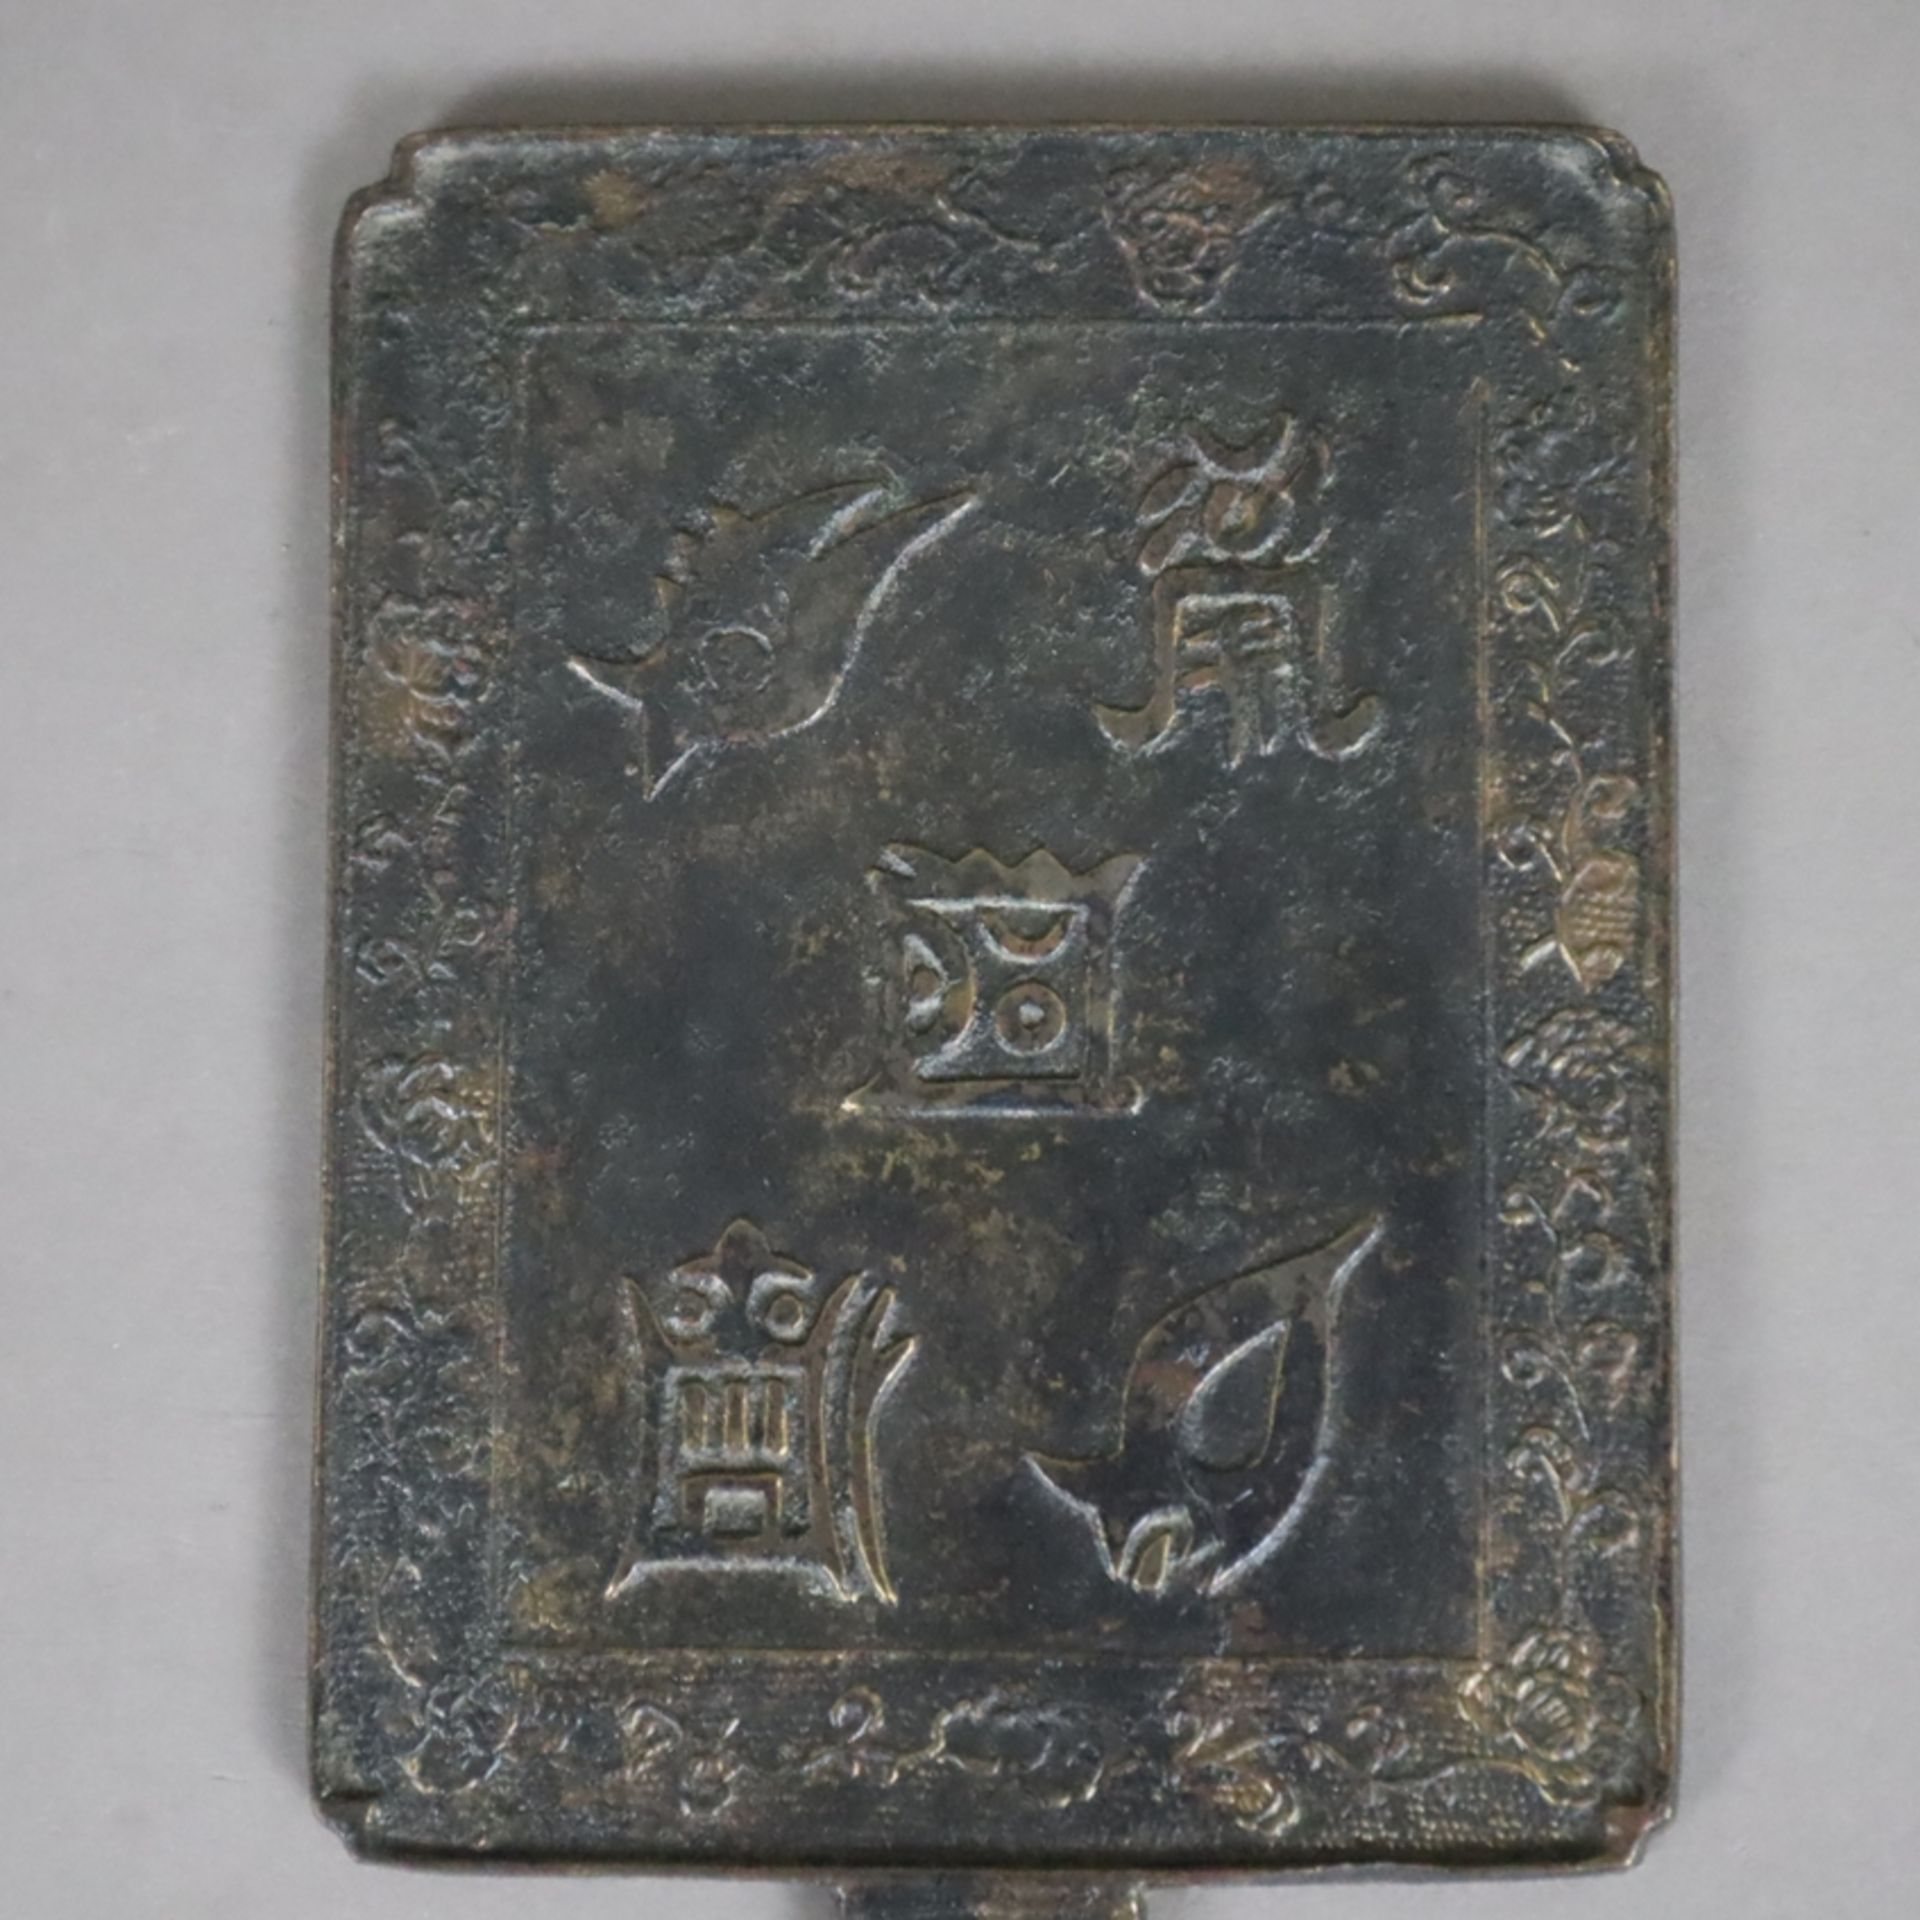 Handspiegel aus Bronze - Japan, Bronze mit dunkler Patina, zierreliefiert, gegossene Signaturkartus - Image 2 of 5